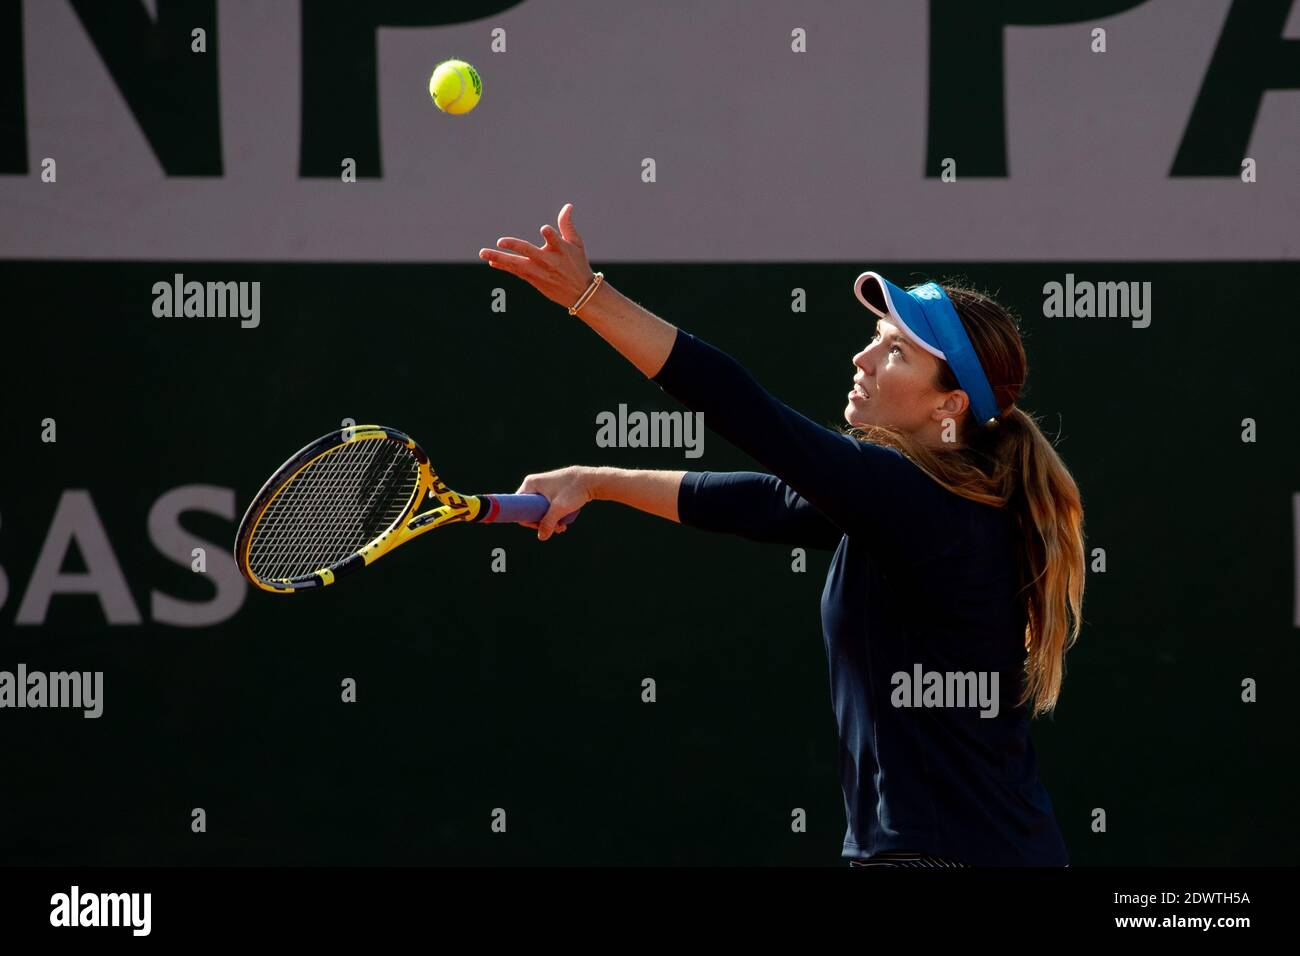 Danielle Collins, joueur de tennis américain, joue un rôle lors d'un match à l'Open de France 2020, Paris, France, Europe. Banque D'Images